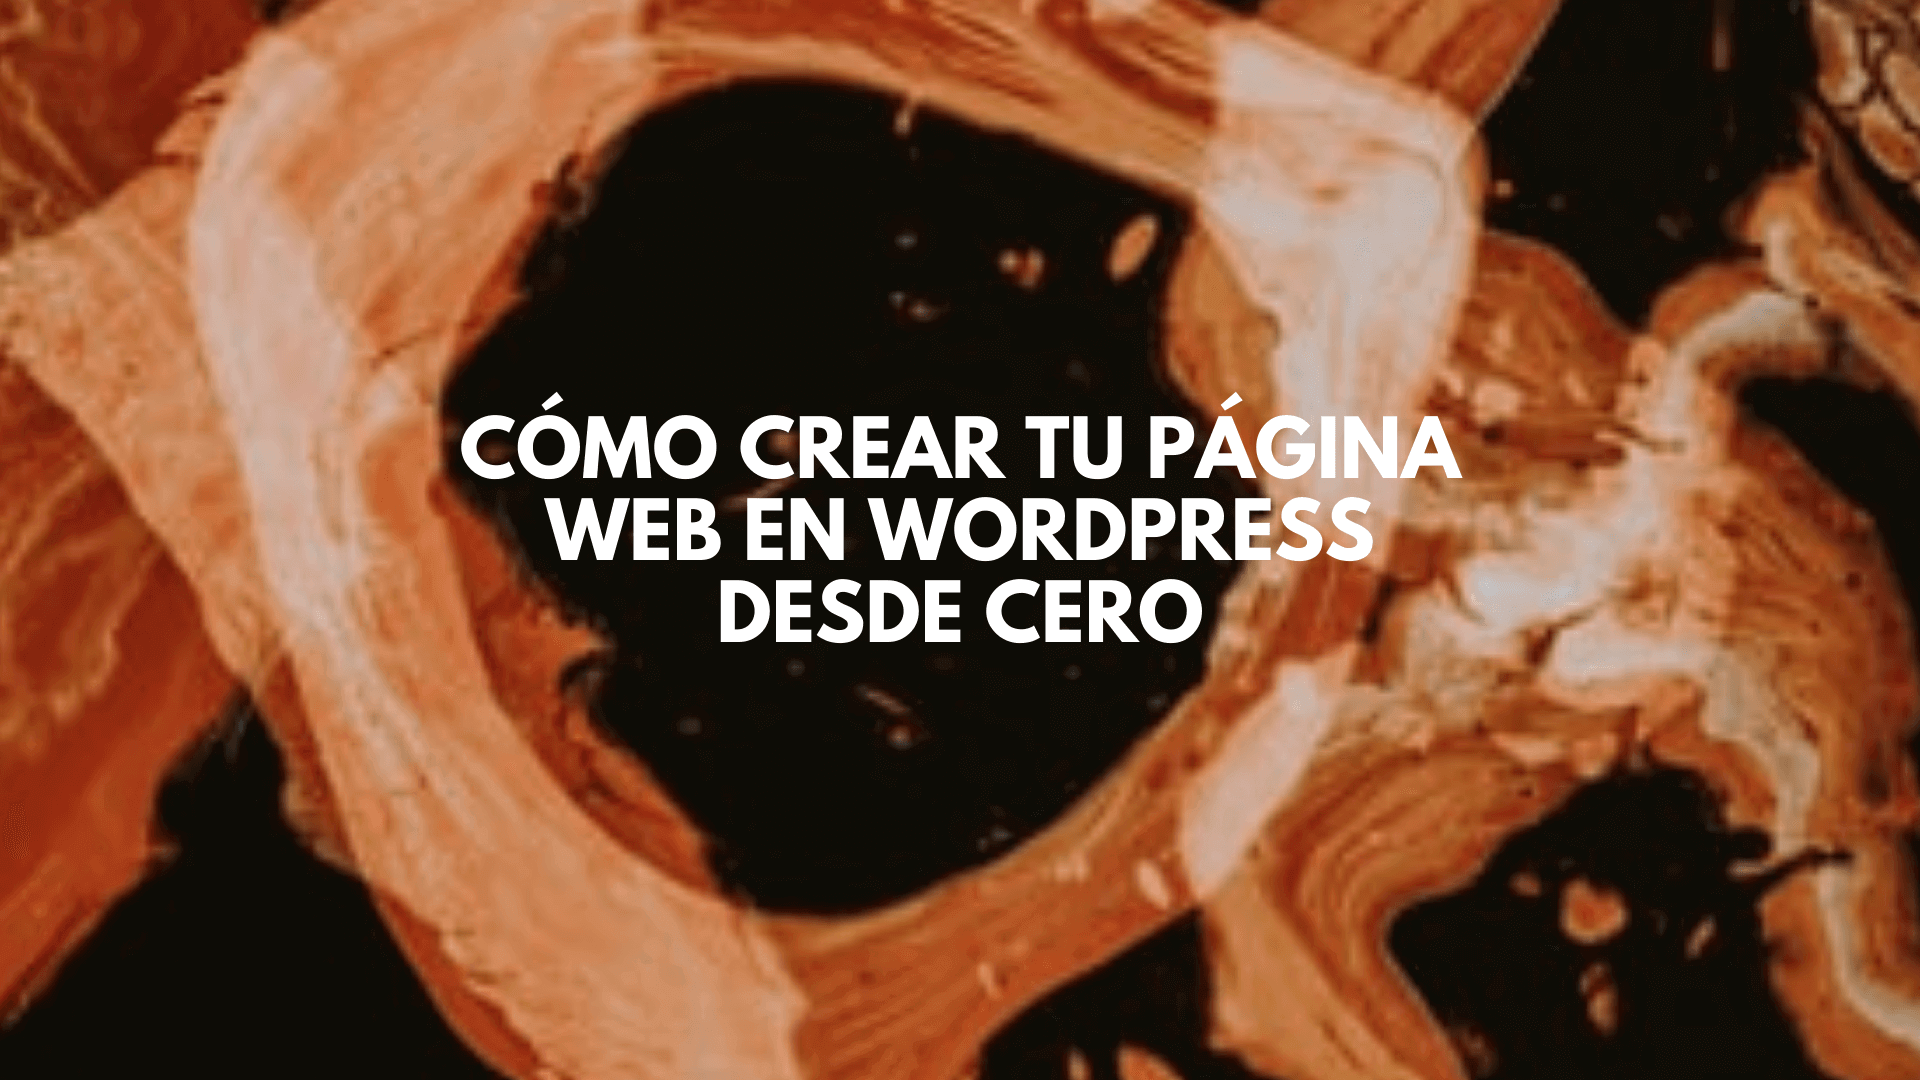 Cómo crear tu página web en wordpress desde cero